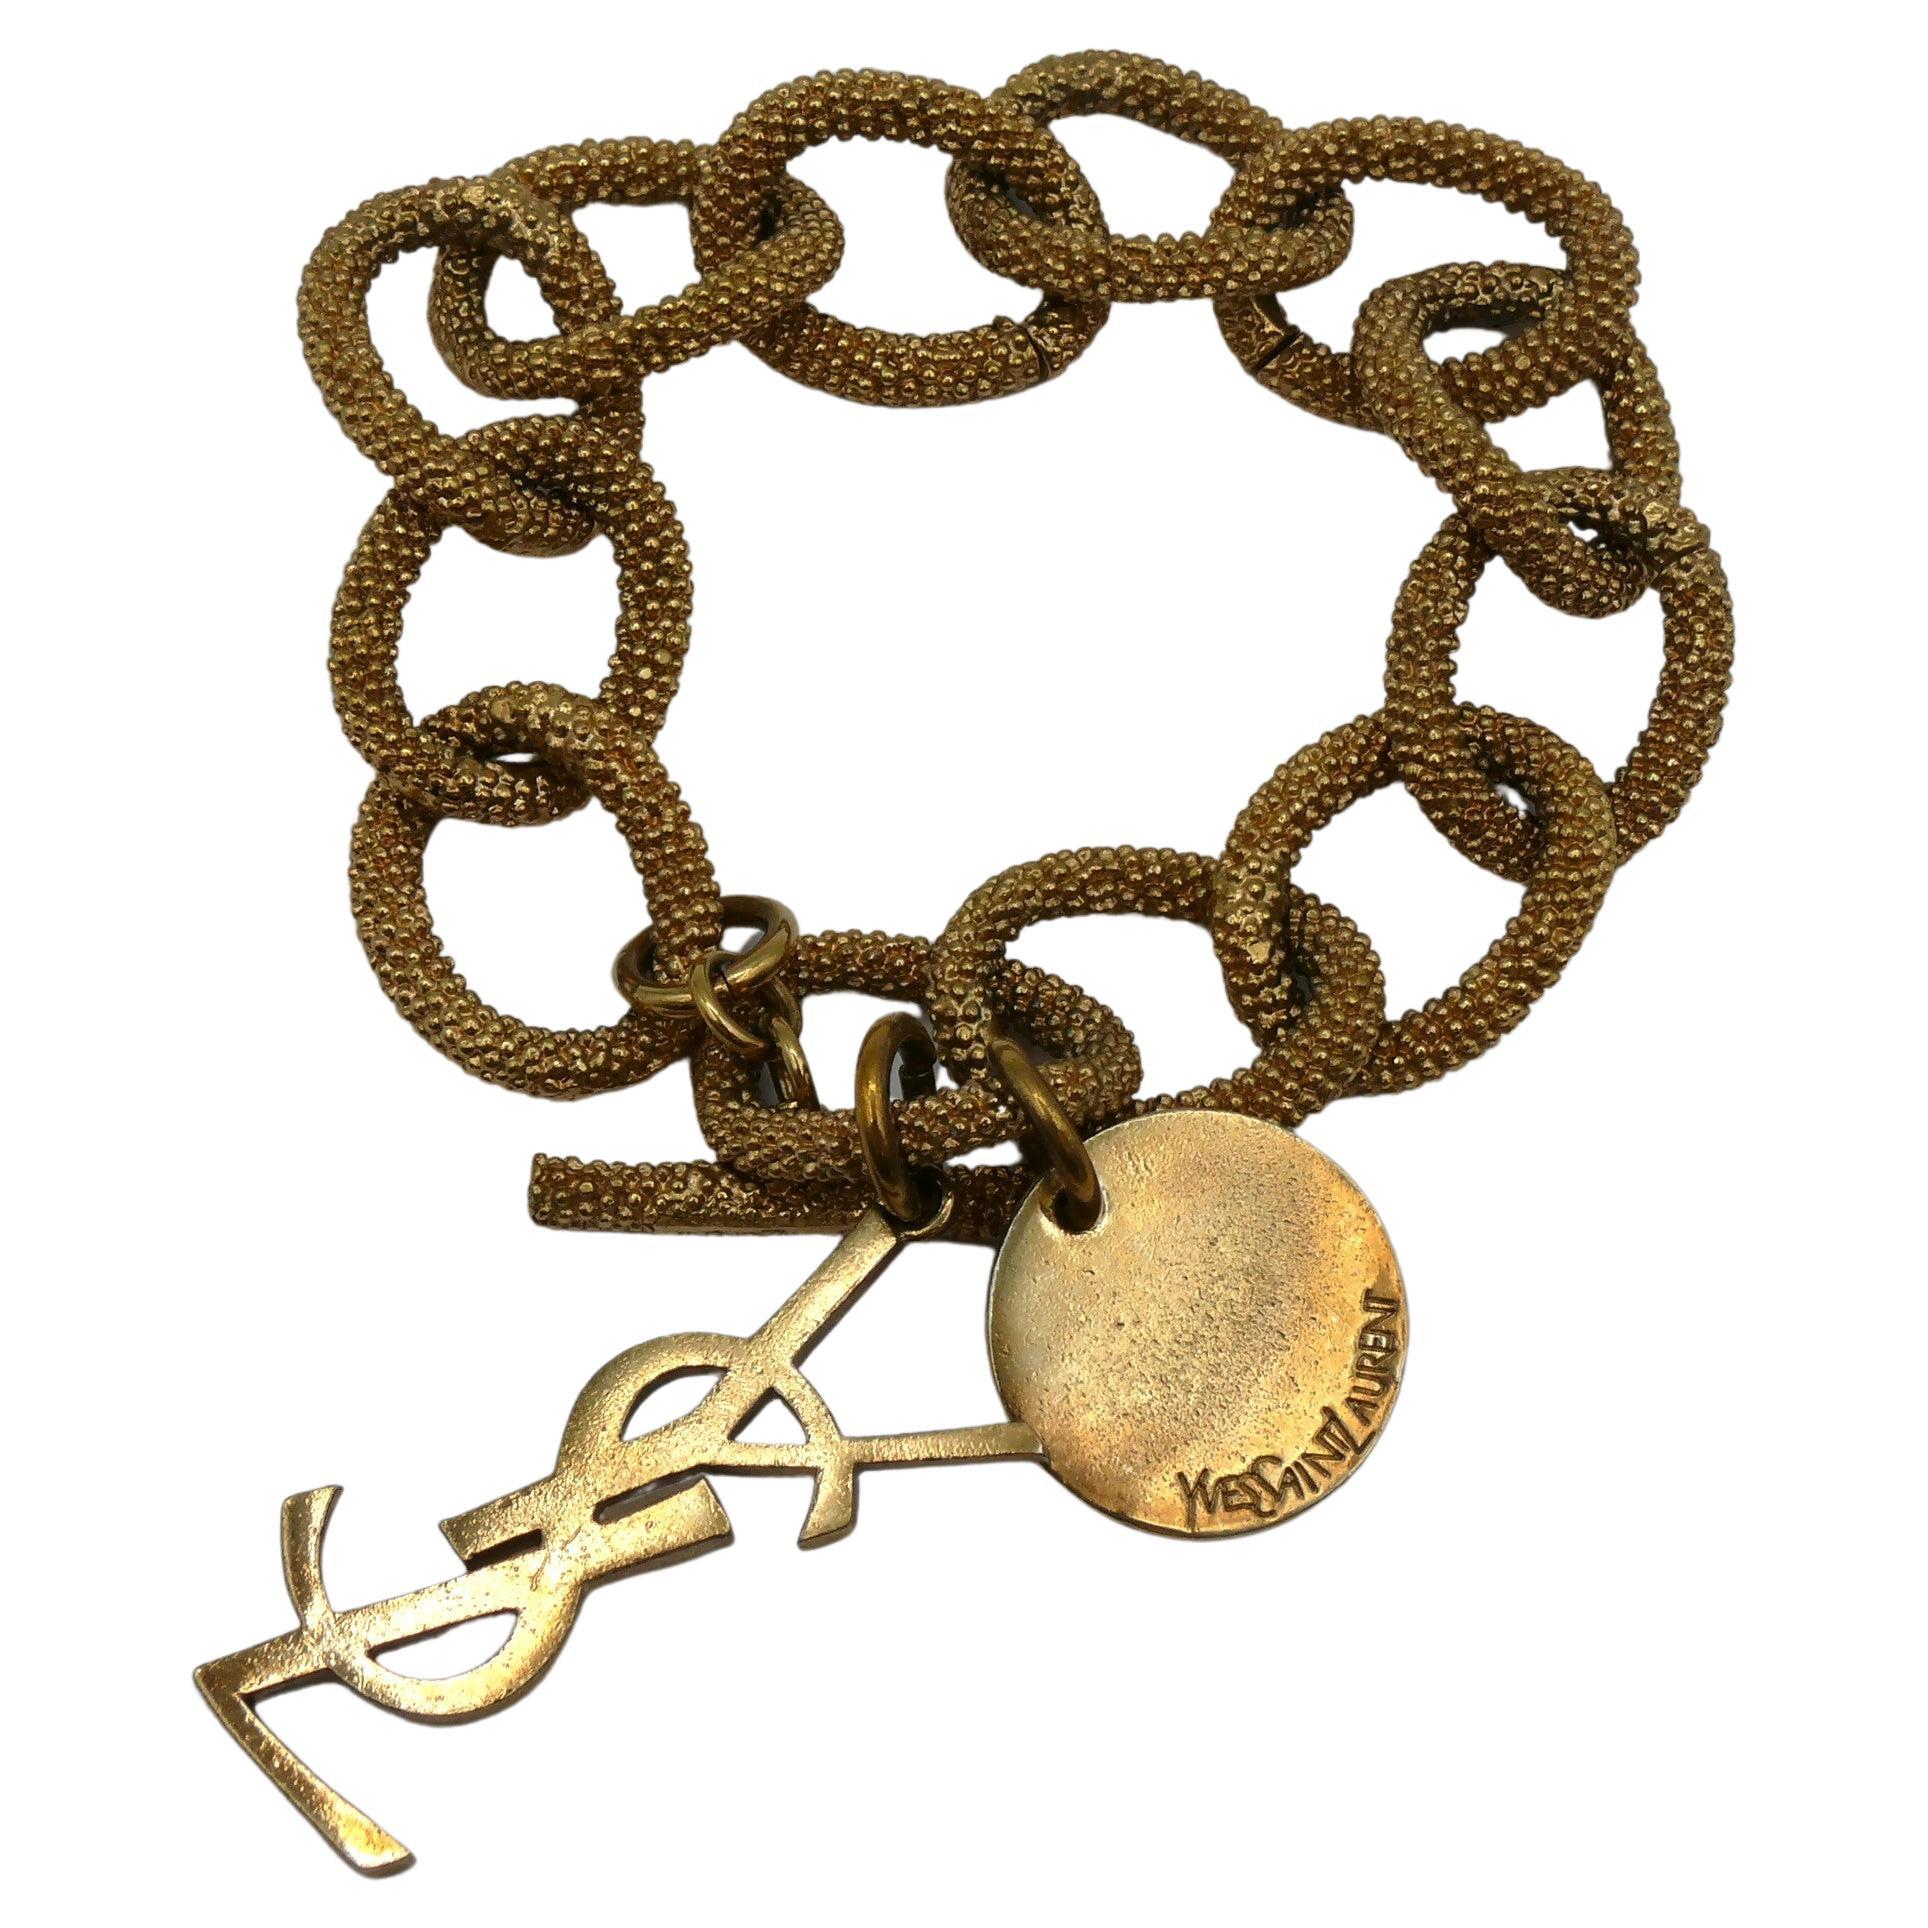 YSL Logo Chain Bracelet in Gold - Saint Laurent